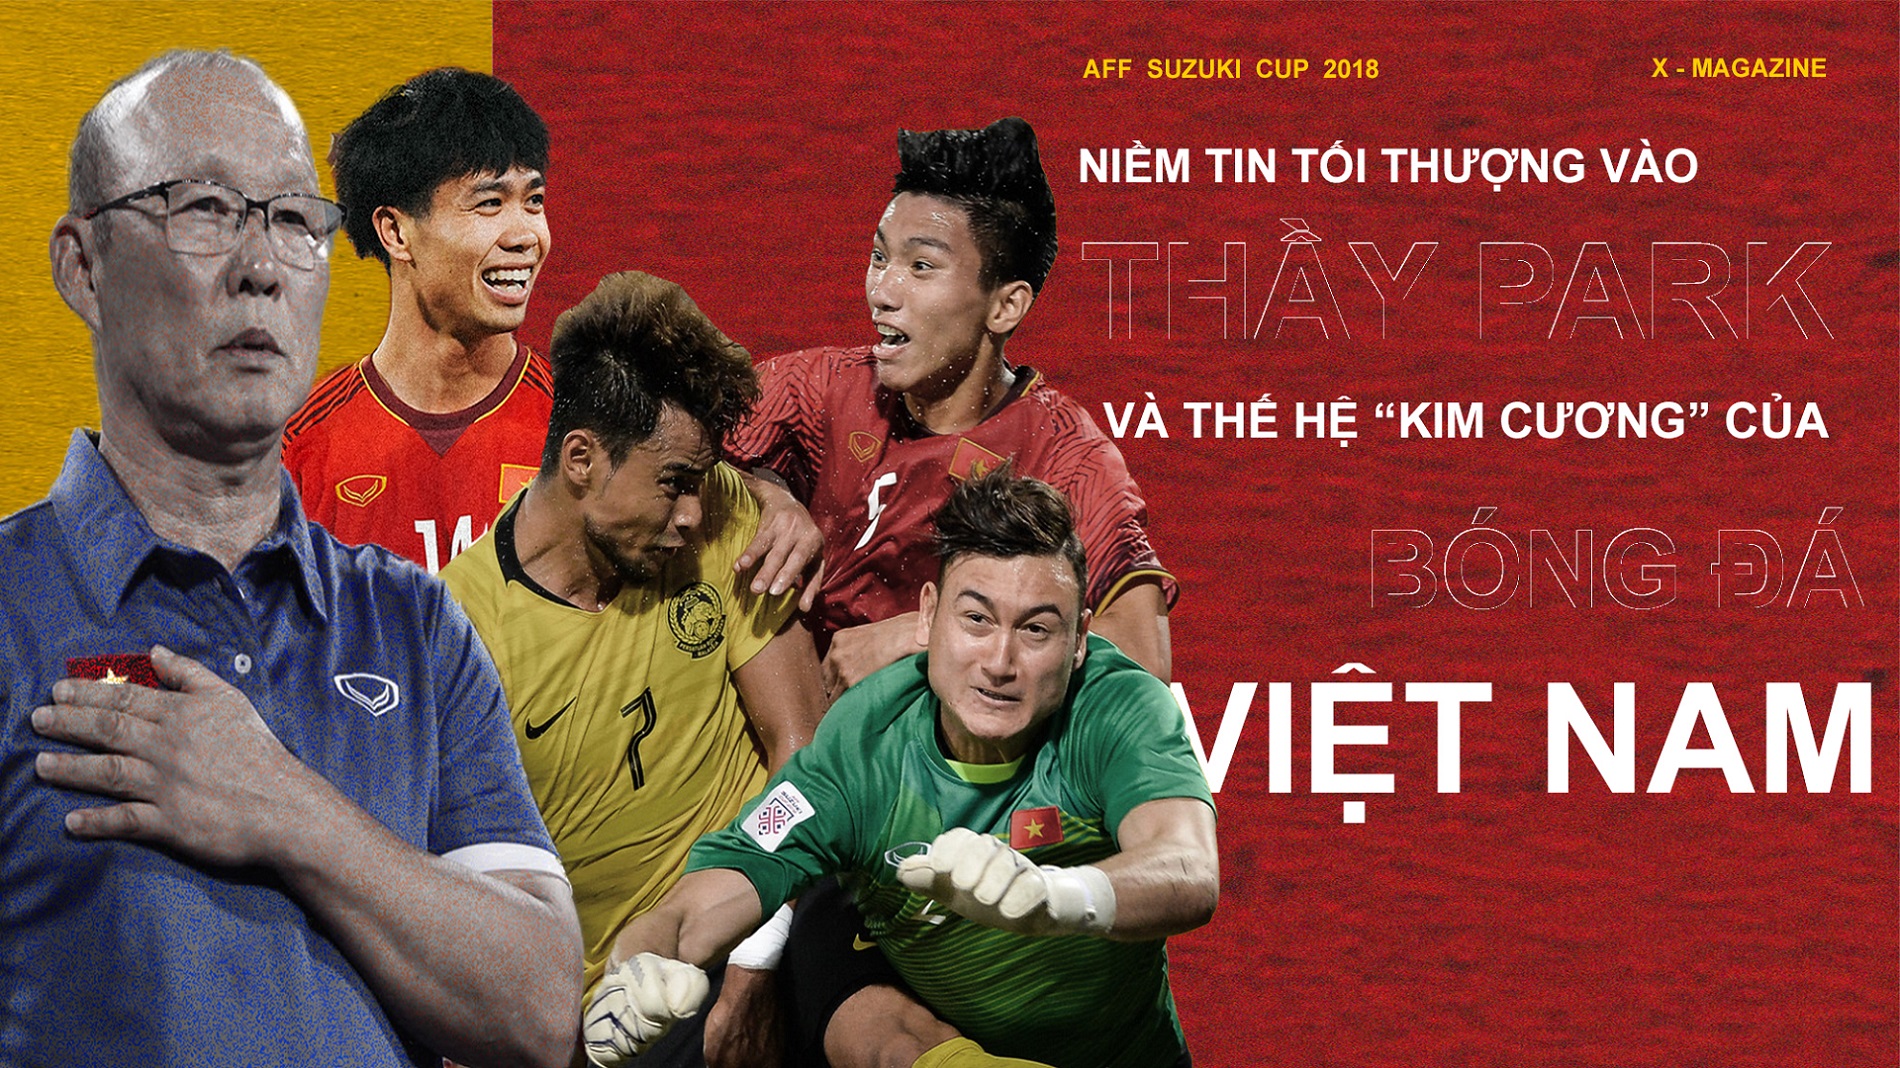 AFF CUP 2018: Niềm tin tối thượng vào thầy Park và thế hệ "kim cương" của bóng đá Việt Nam